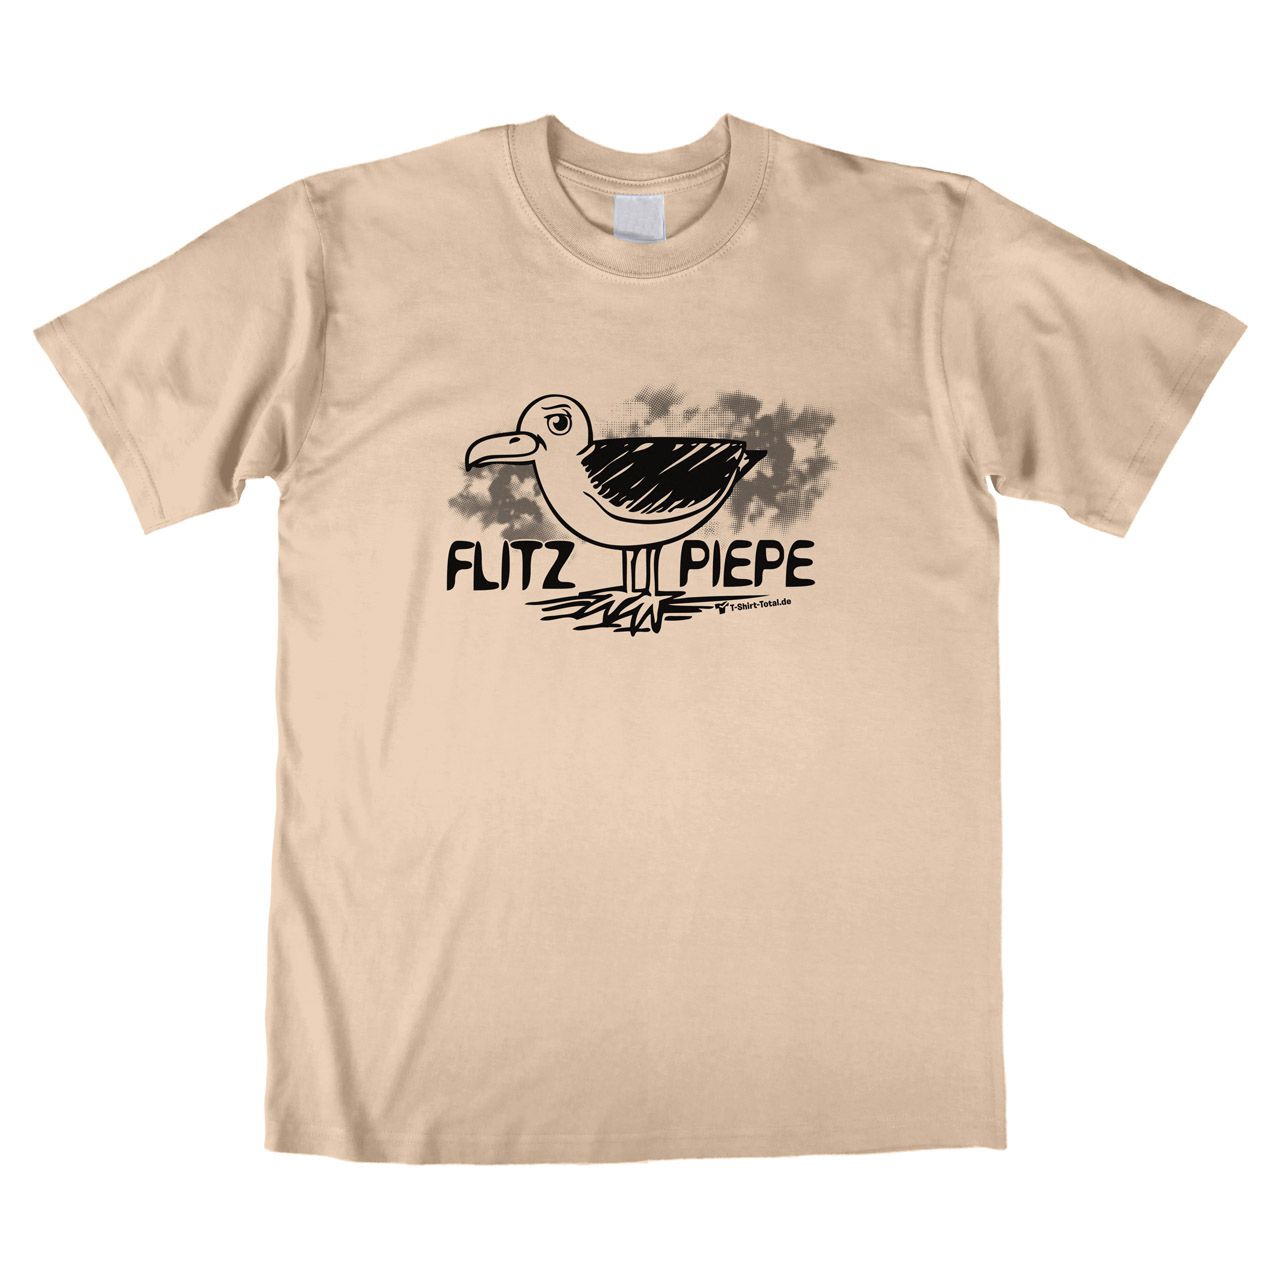 Flitzpiepe Unisex T-Shirt natur Medium